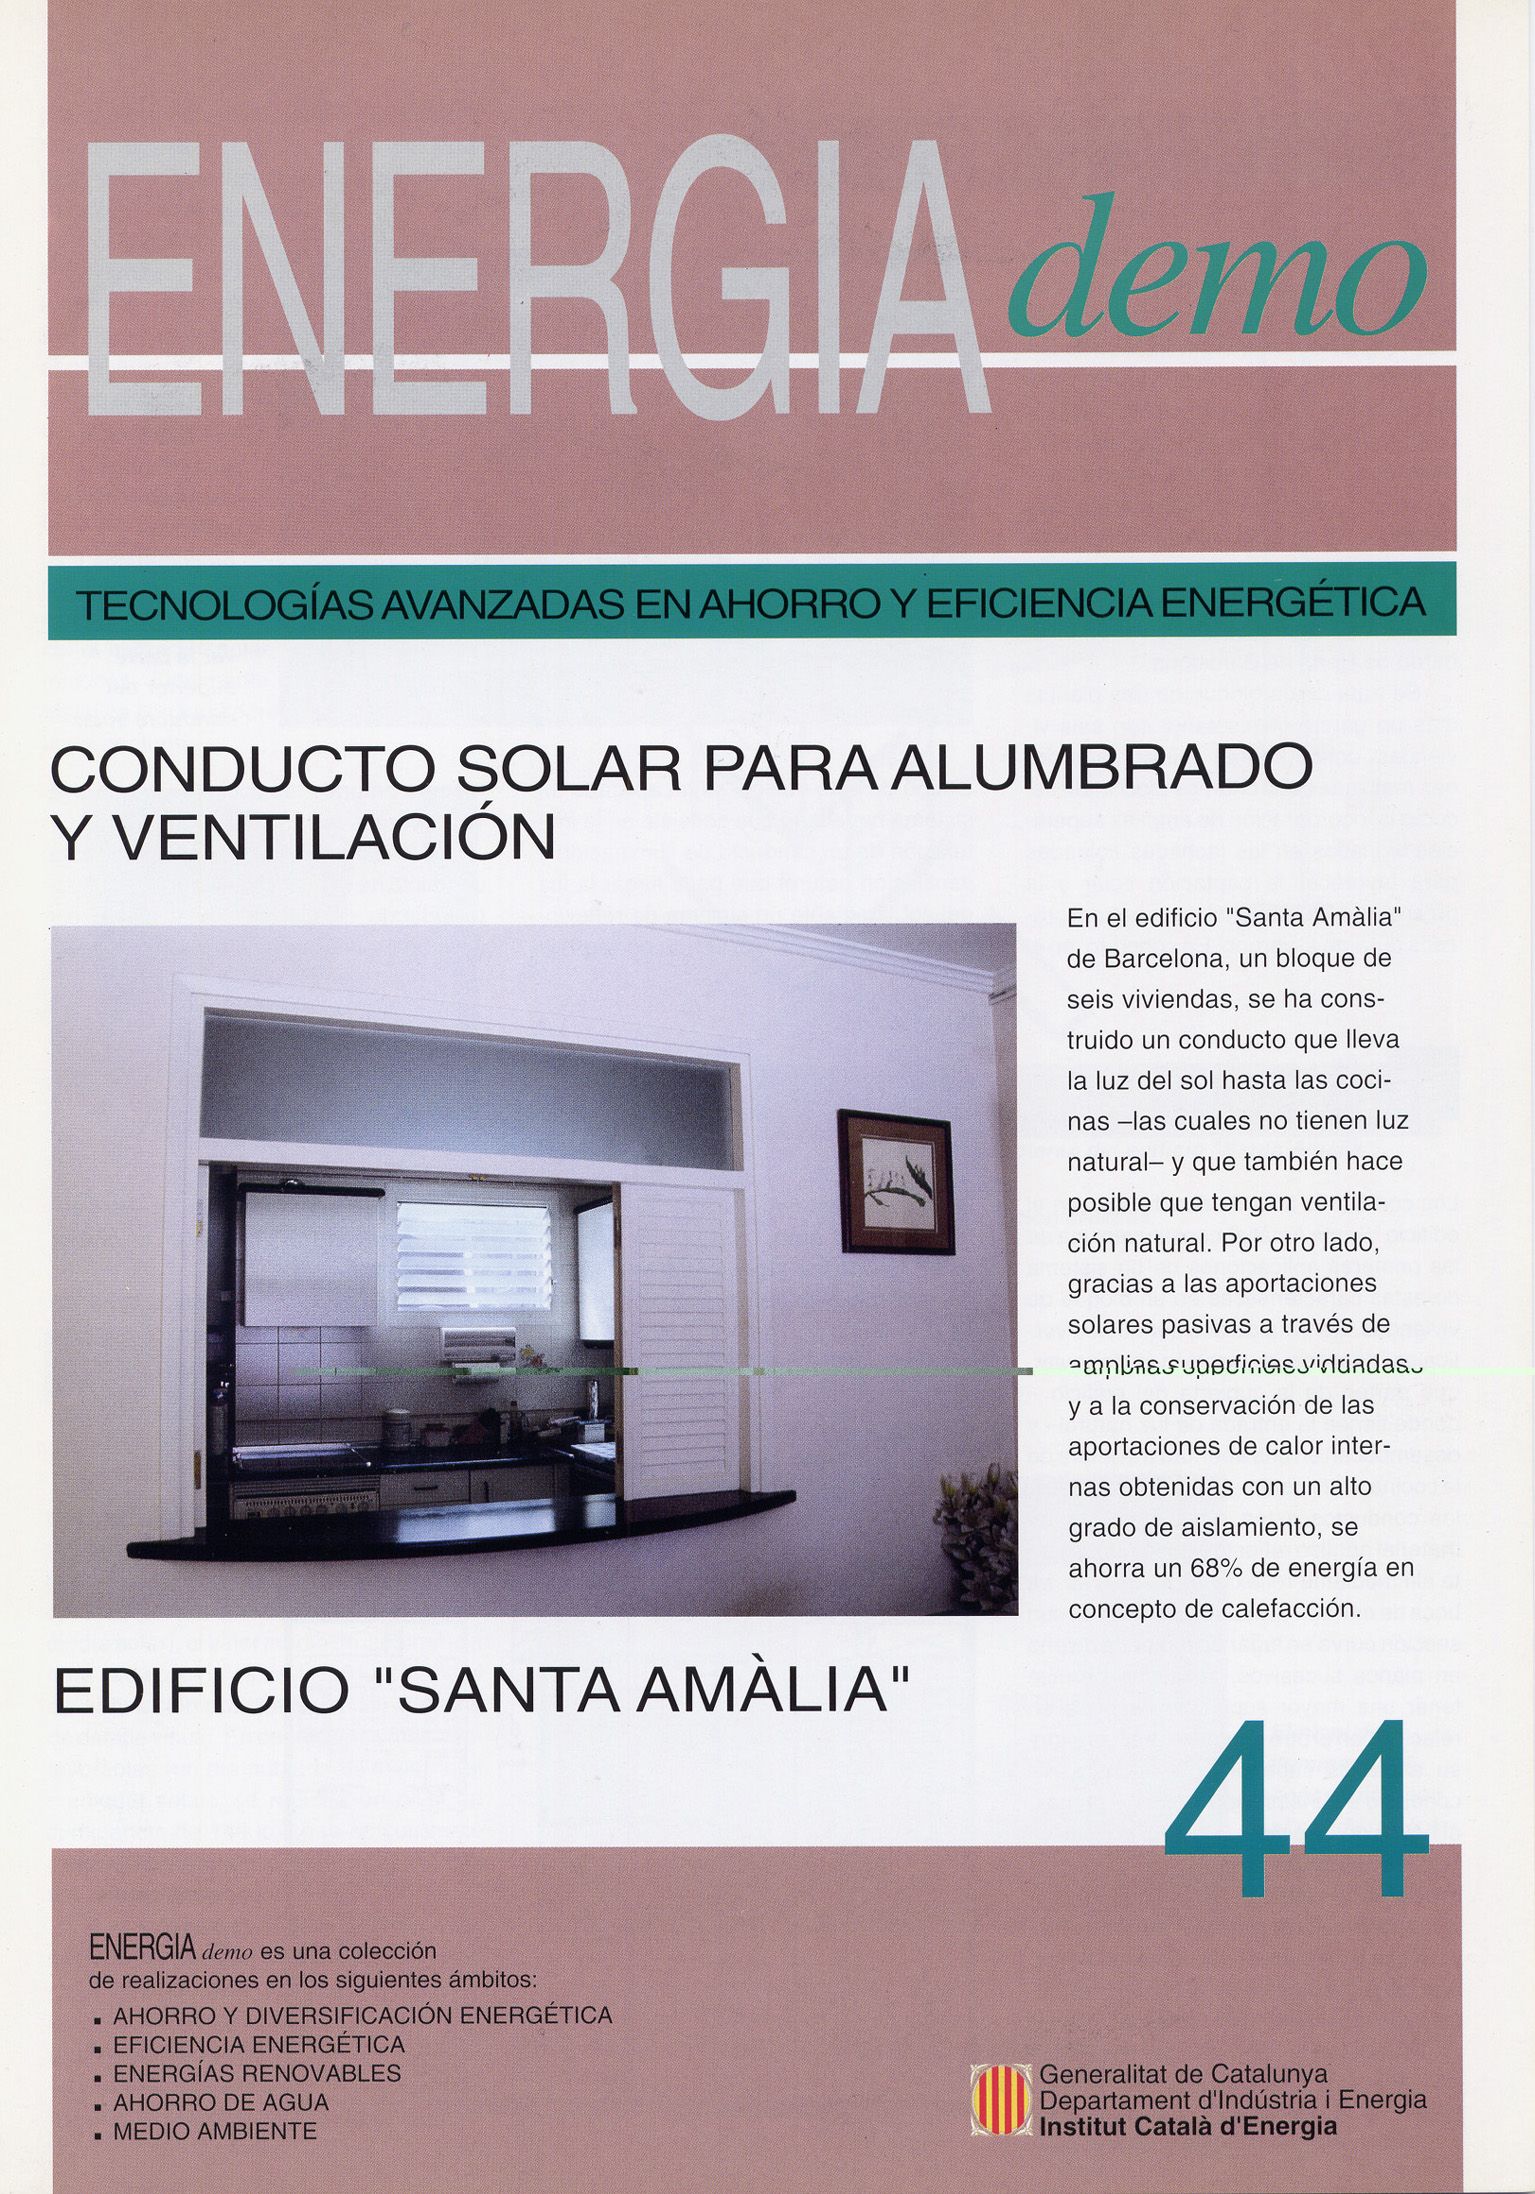 Orlando De Urrutia - Prensa -Edificio Santa Amelia (2)